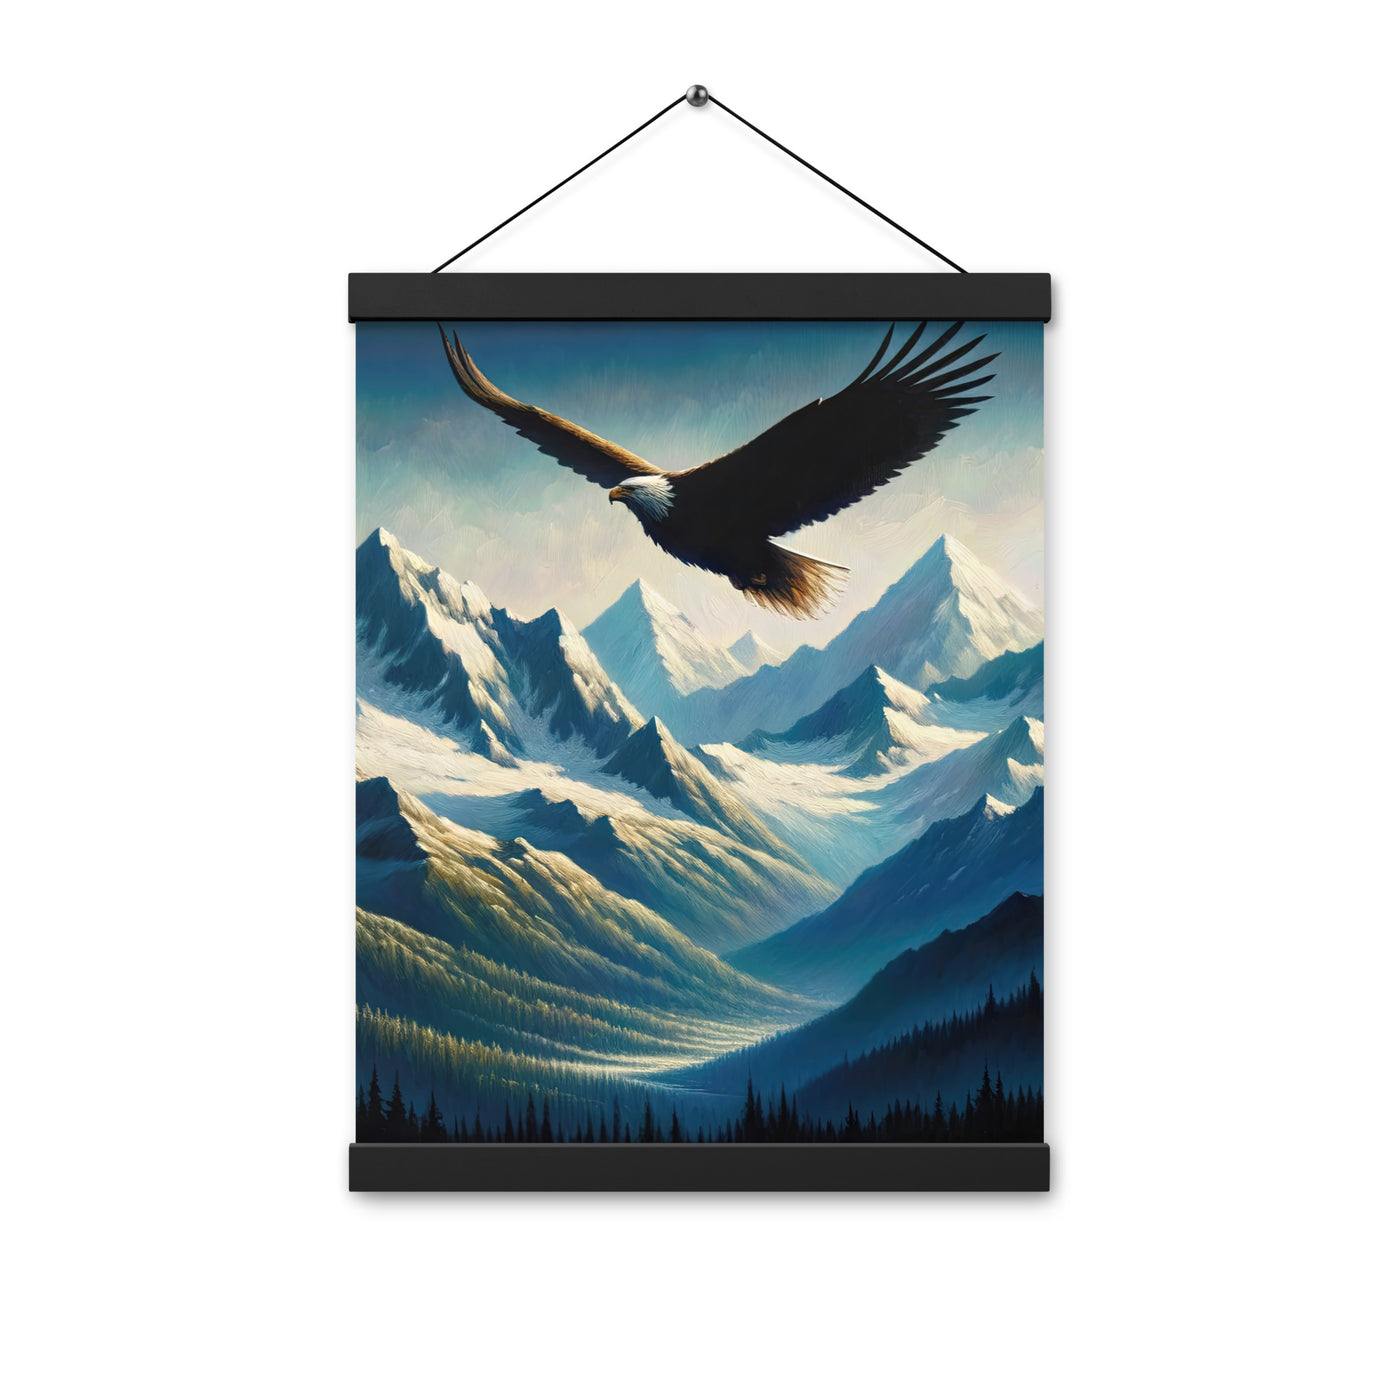 Ölgemälde eines Adlers vor schneebedeckten Bergsilhouetten - Premium Poster mit Aufhängung berge xxx yyy zzz 30.5 x 40.6 cm